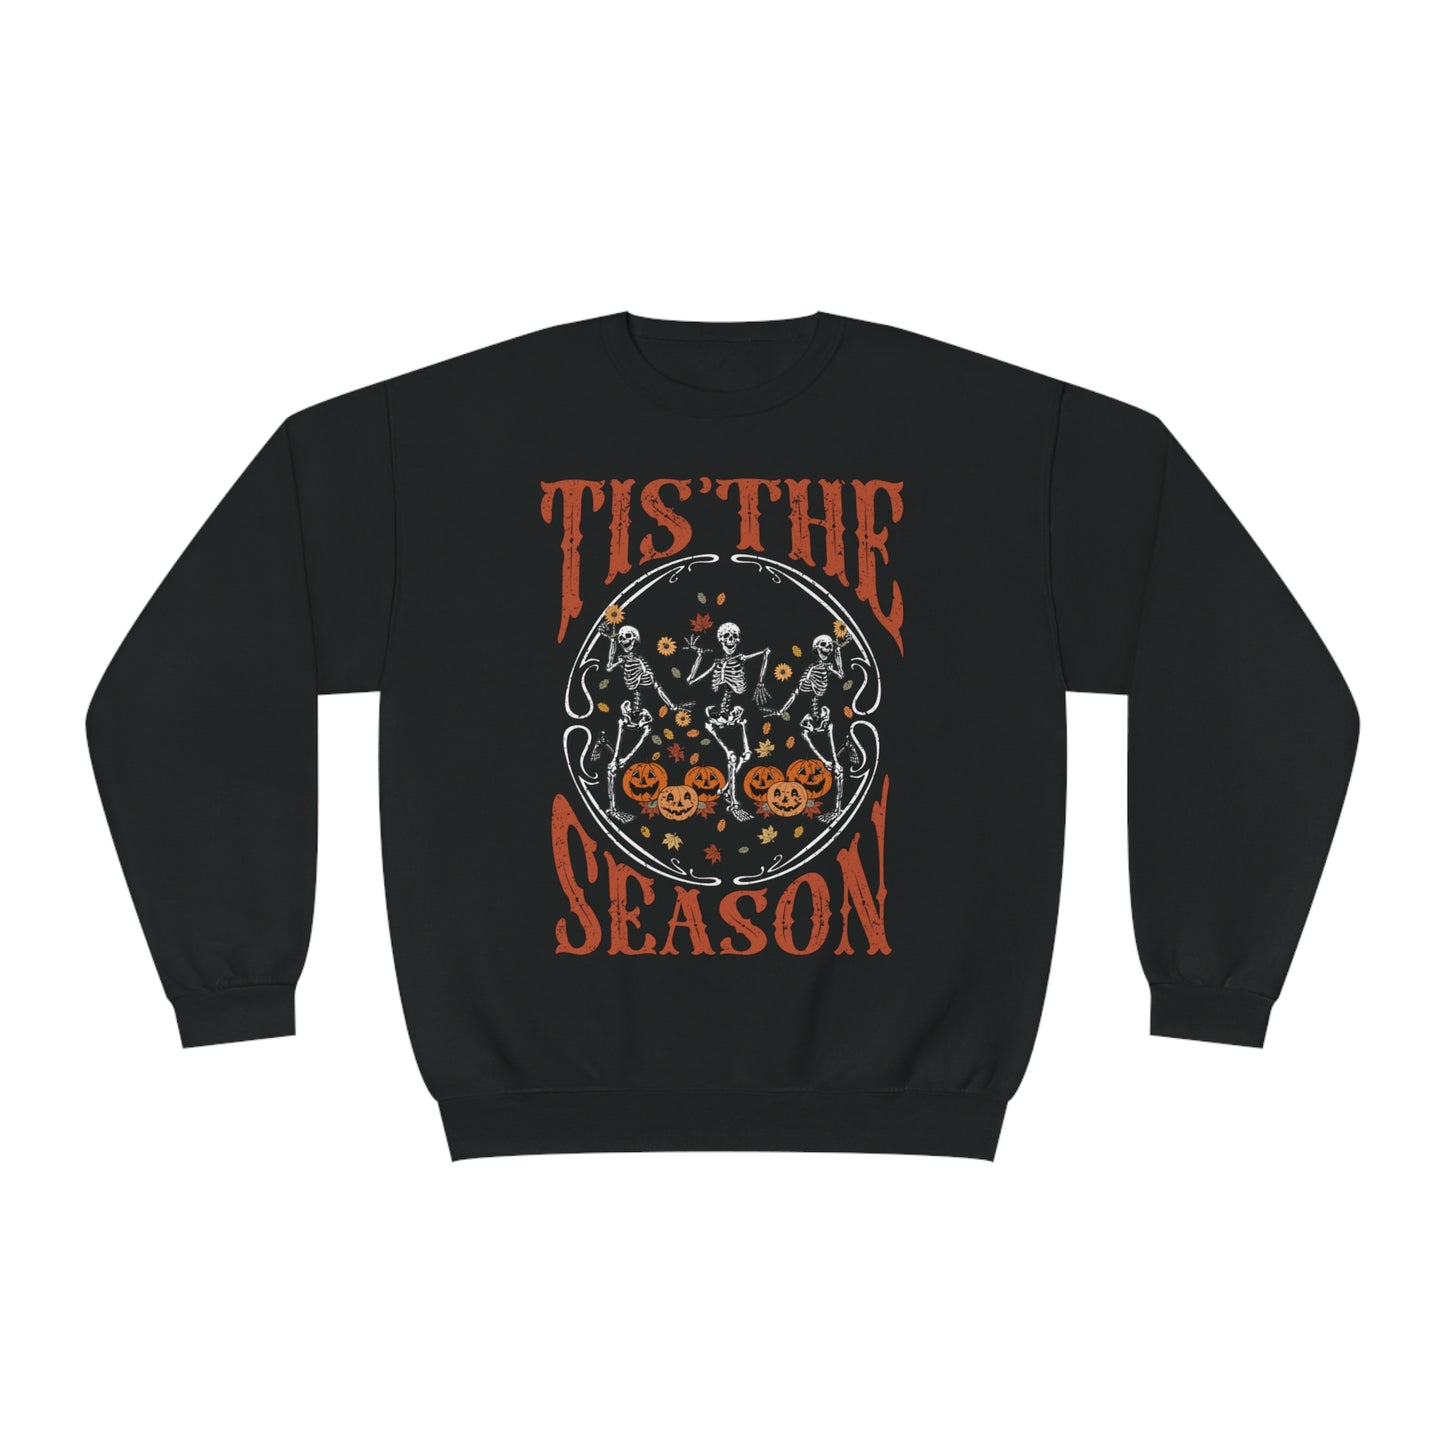 Tis the season Sweatshirt